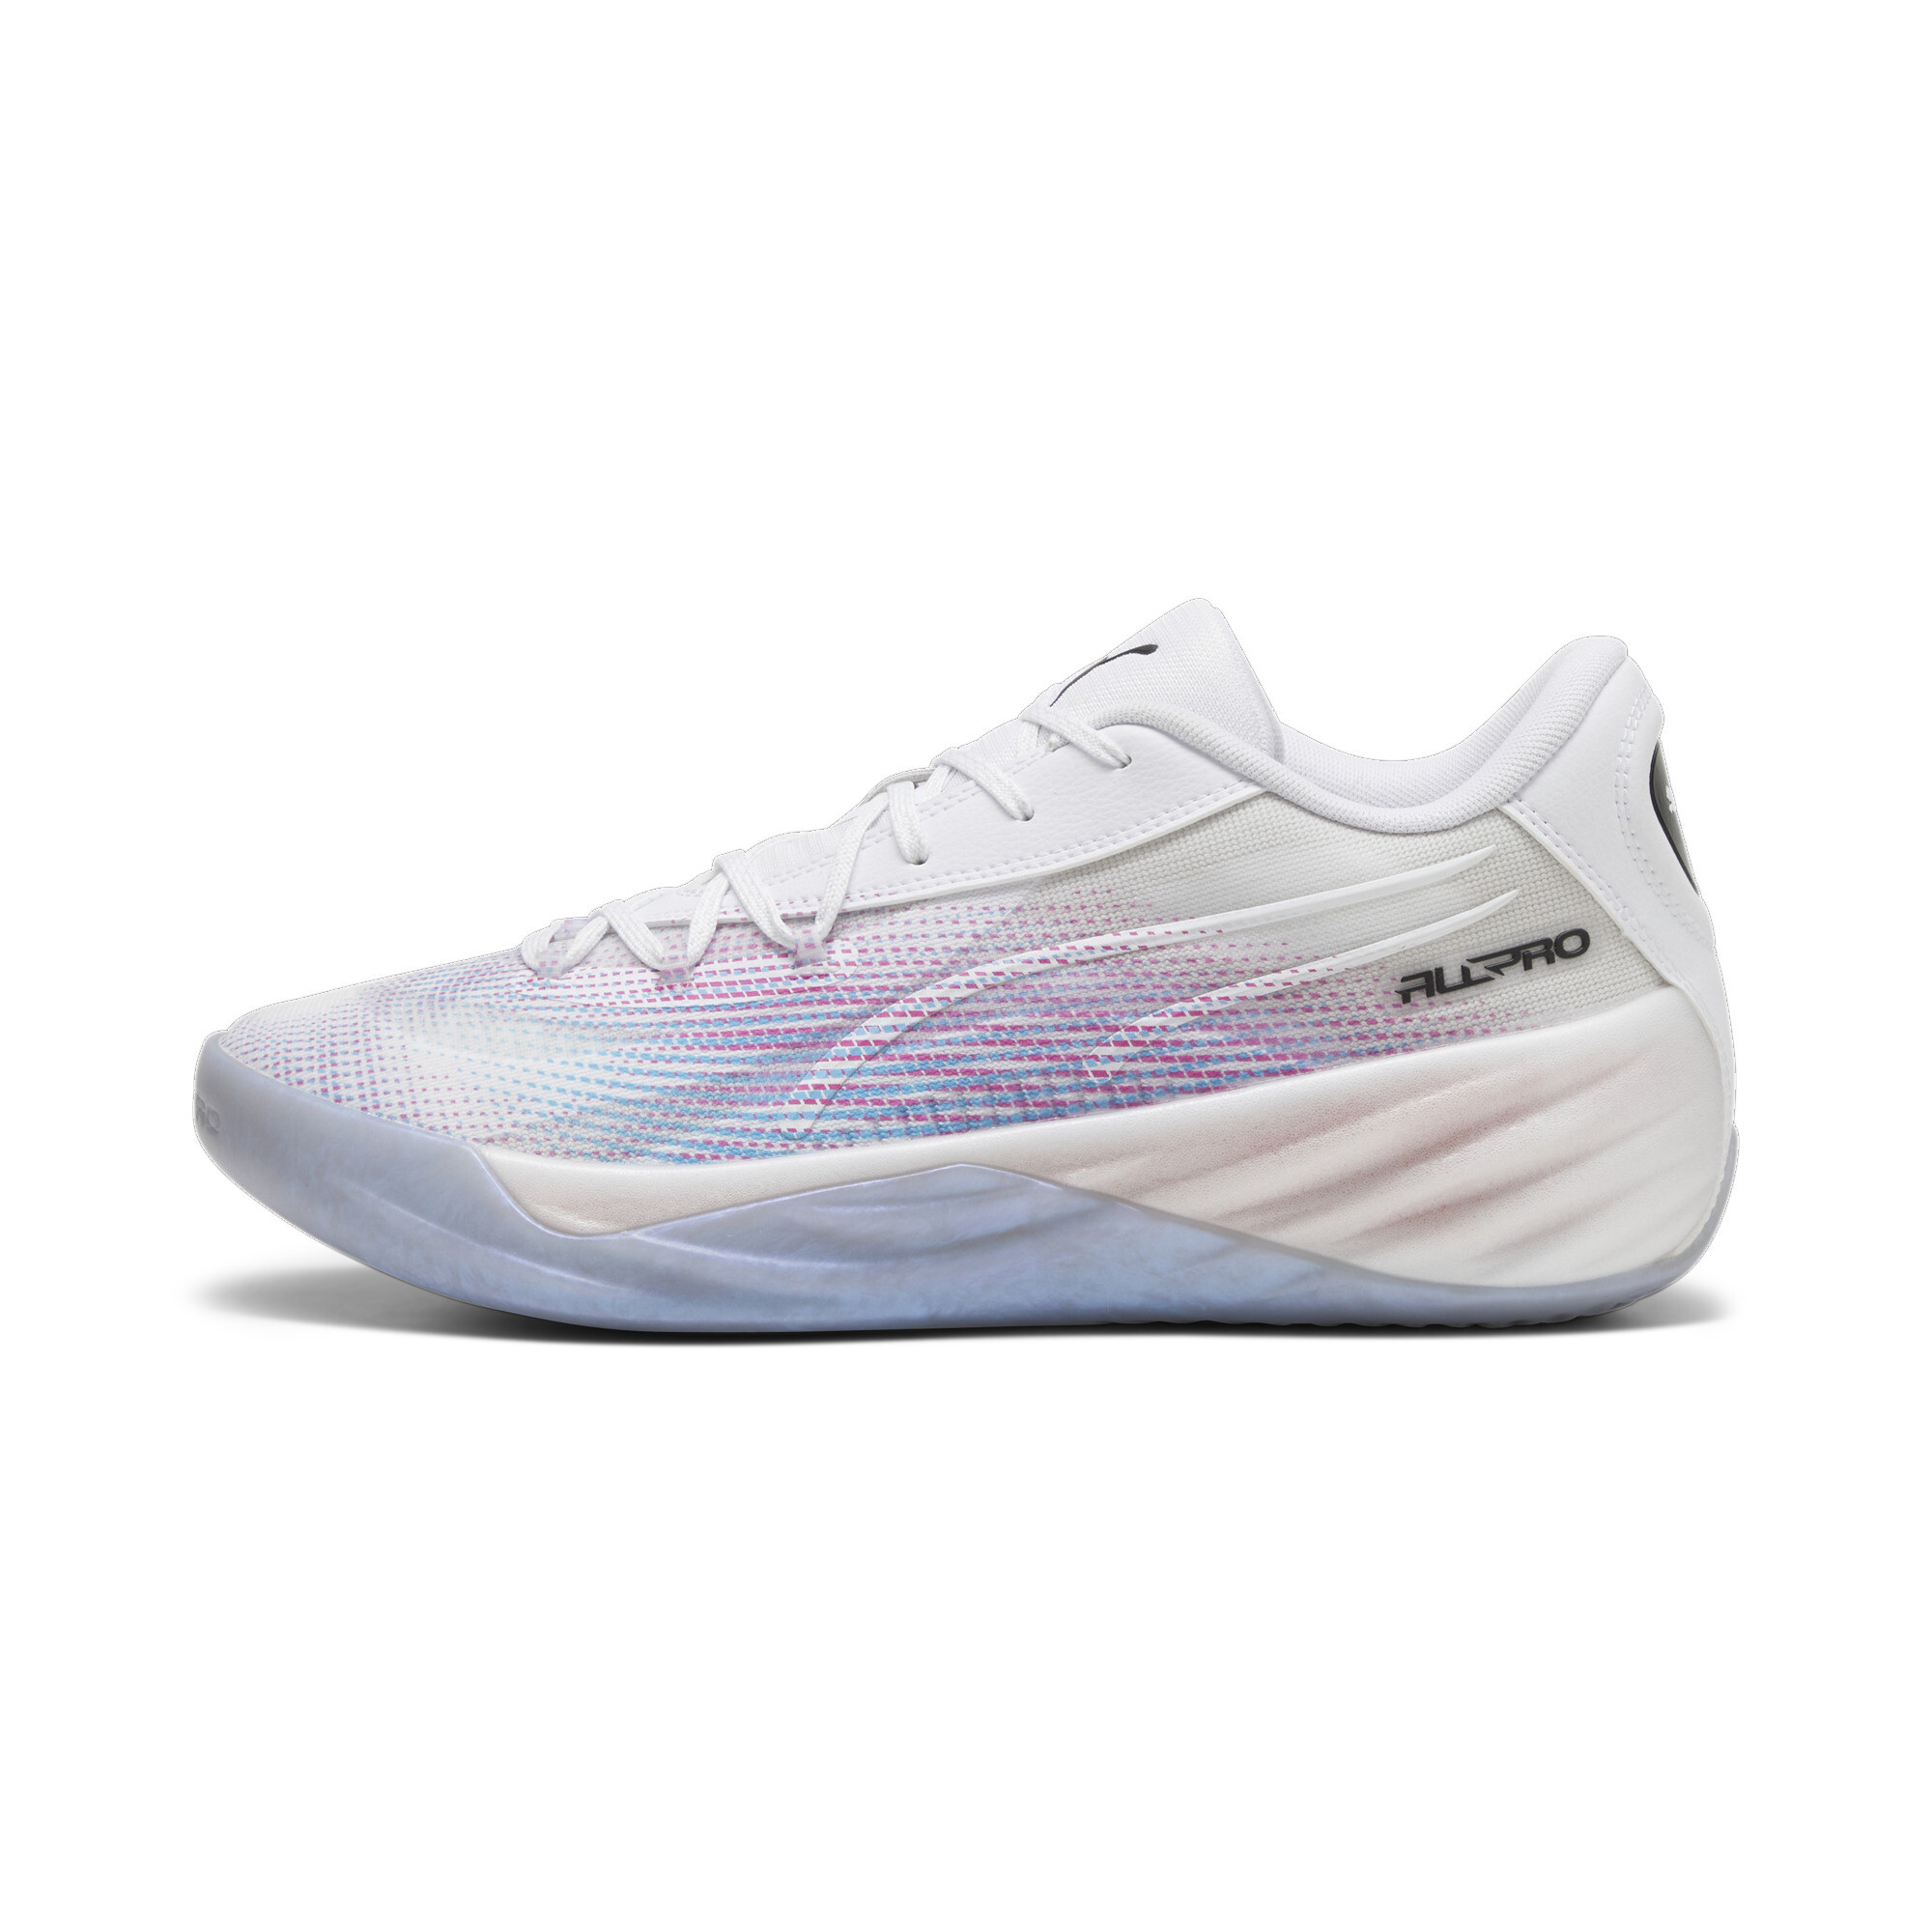 Puma All-Pro NITROâ¢ Basketball Shoes, White, Size 36, Shoes